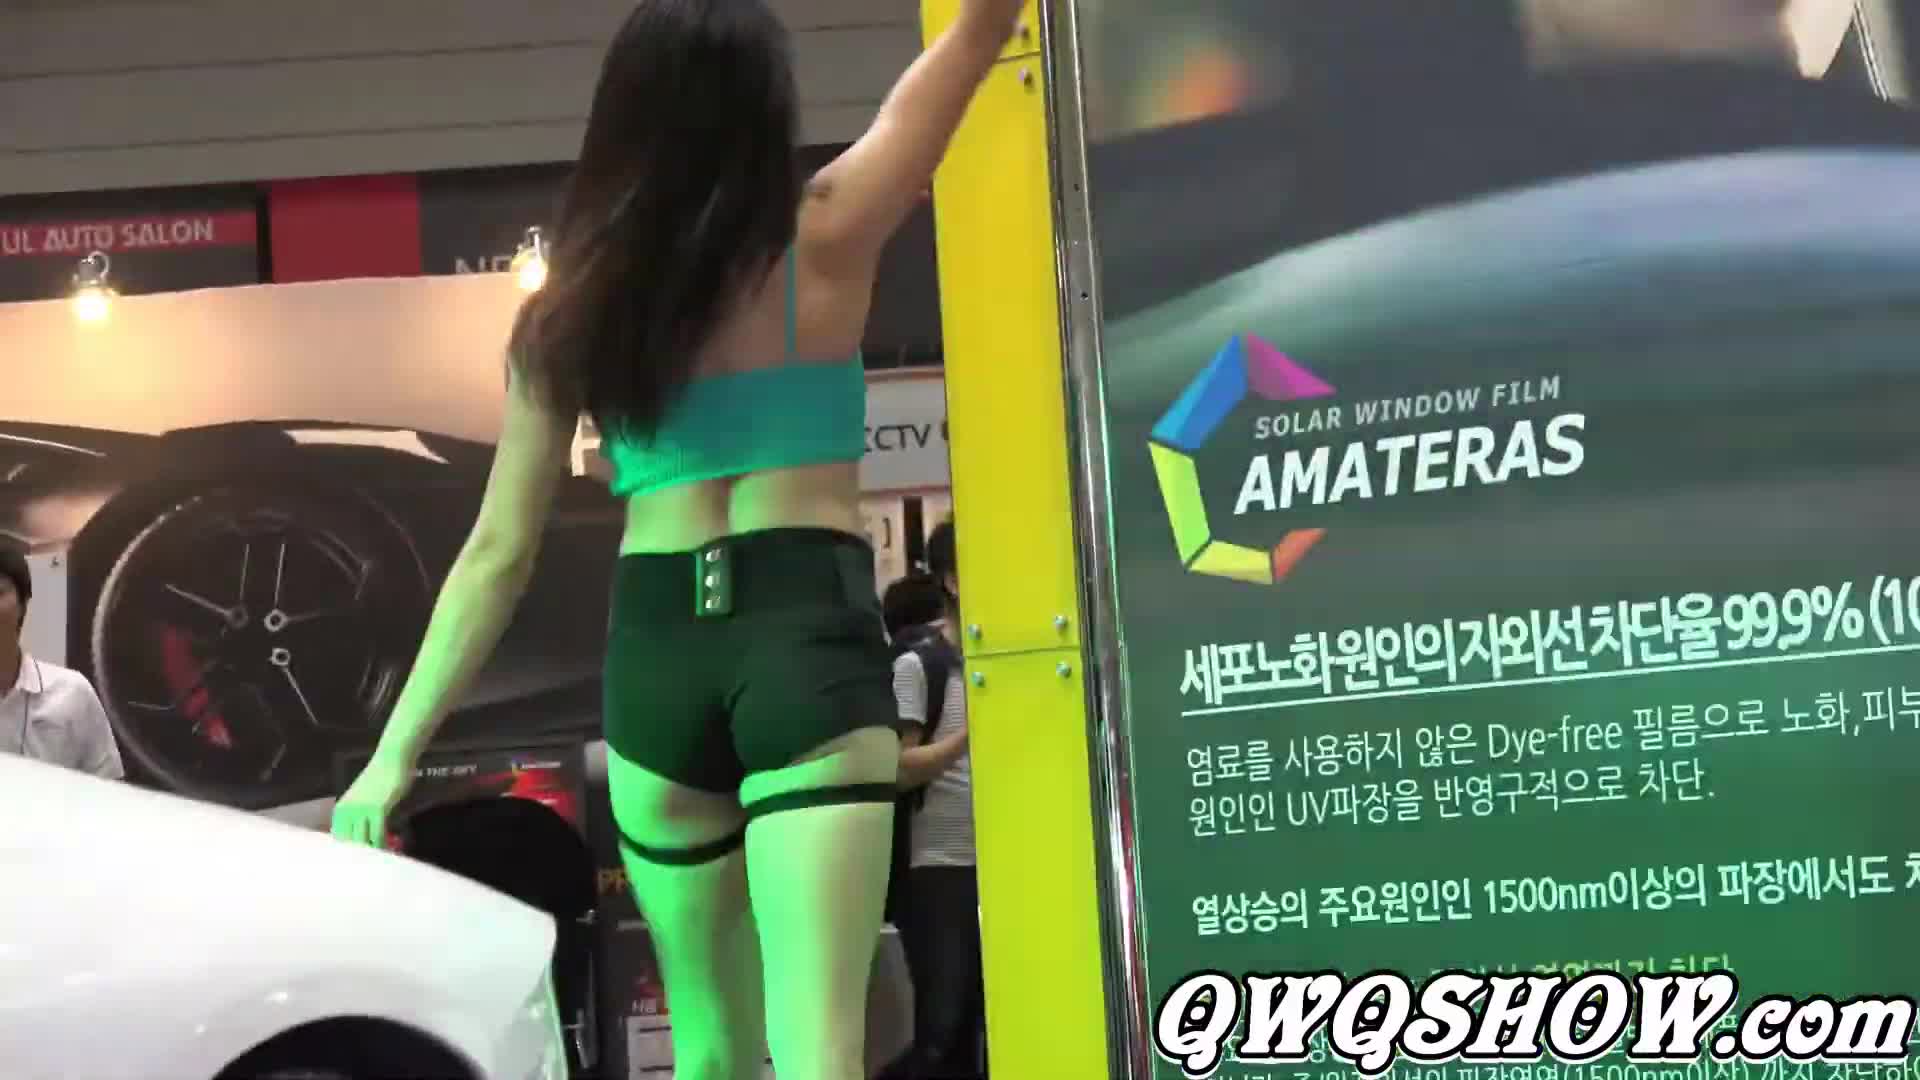 【2017서울오토살롱】AMATERAS Pole Dance Show(1) 劈腿 & Seoul Auto Salon 2017